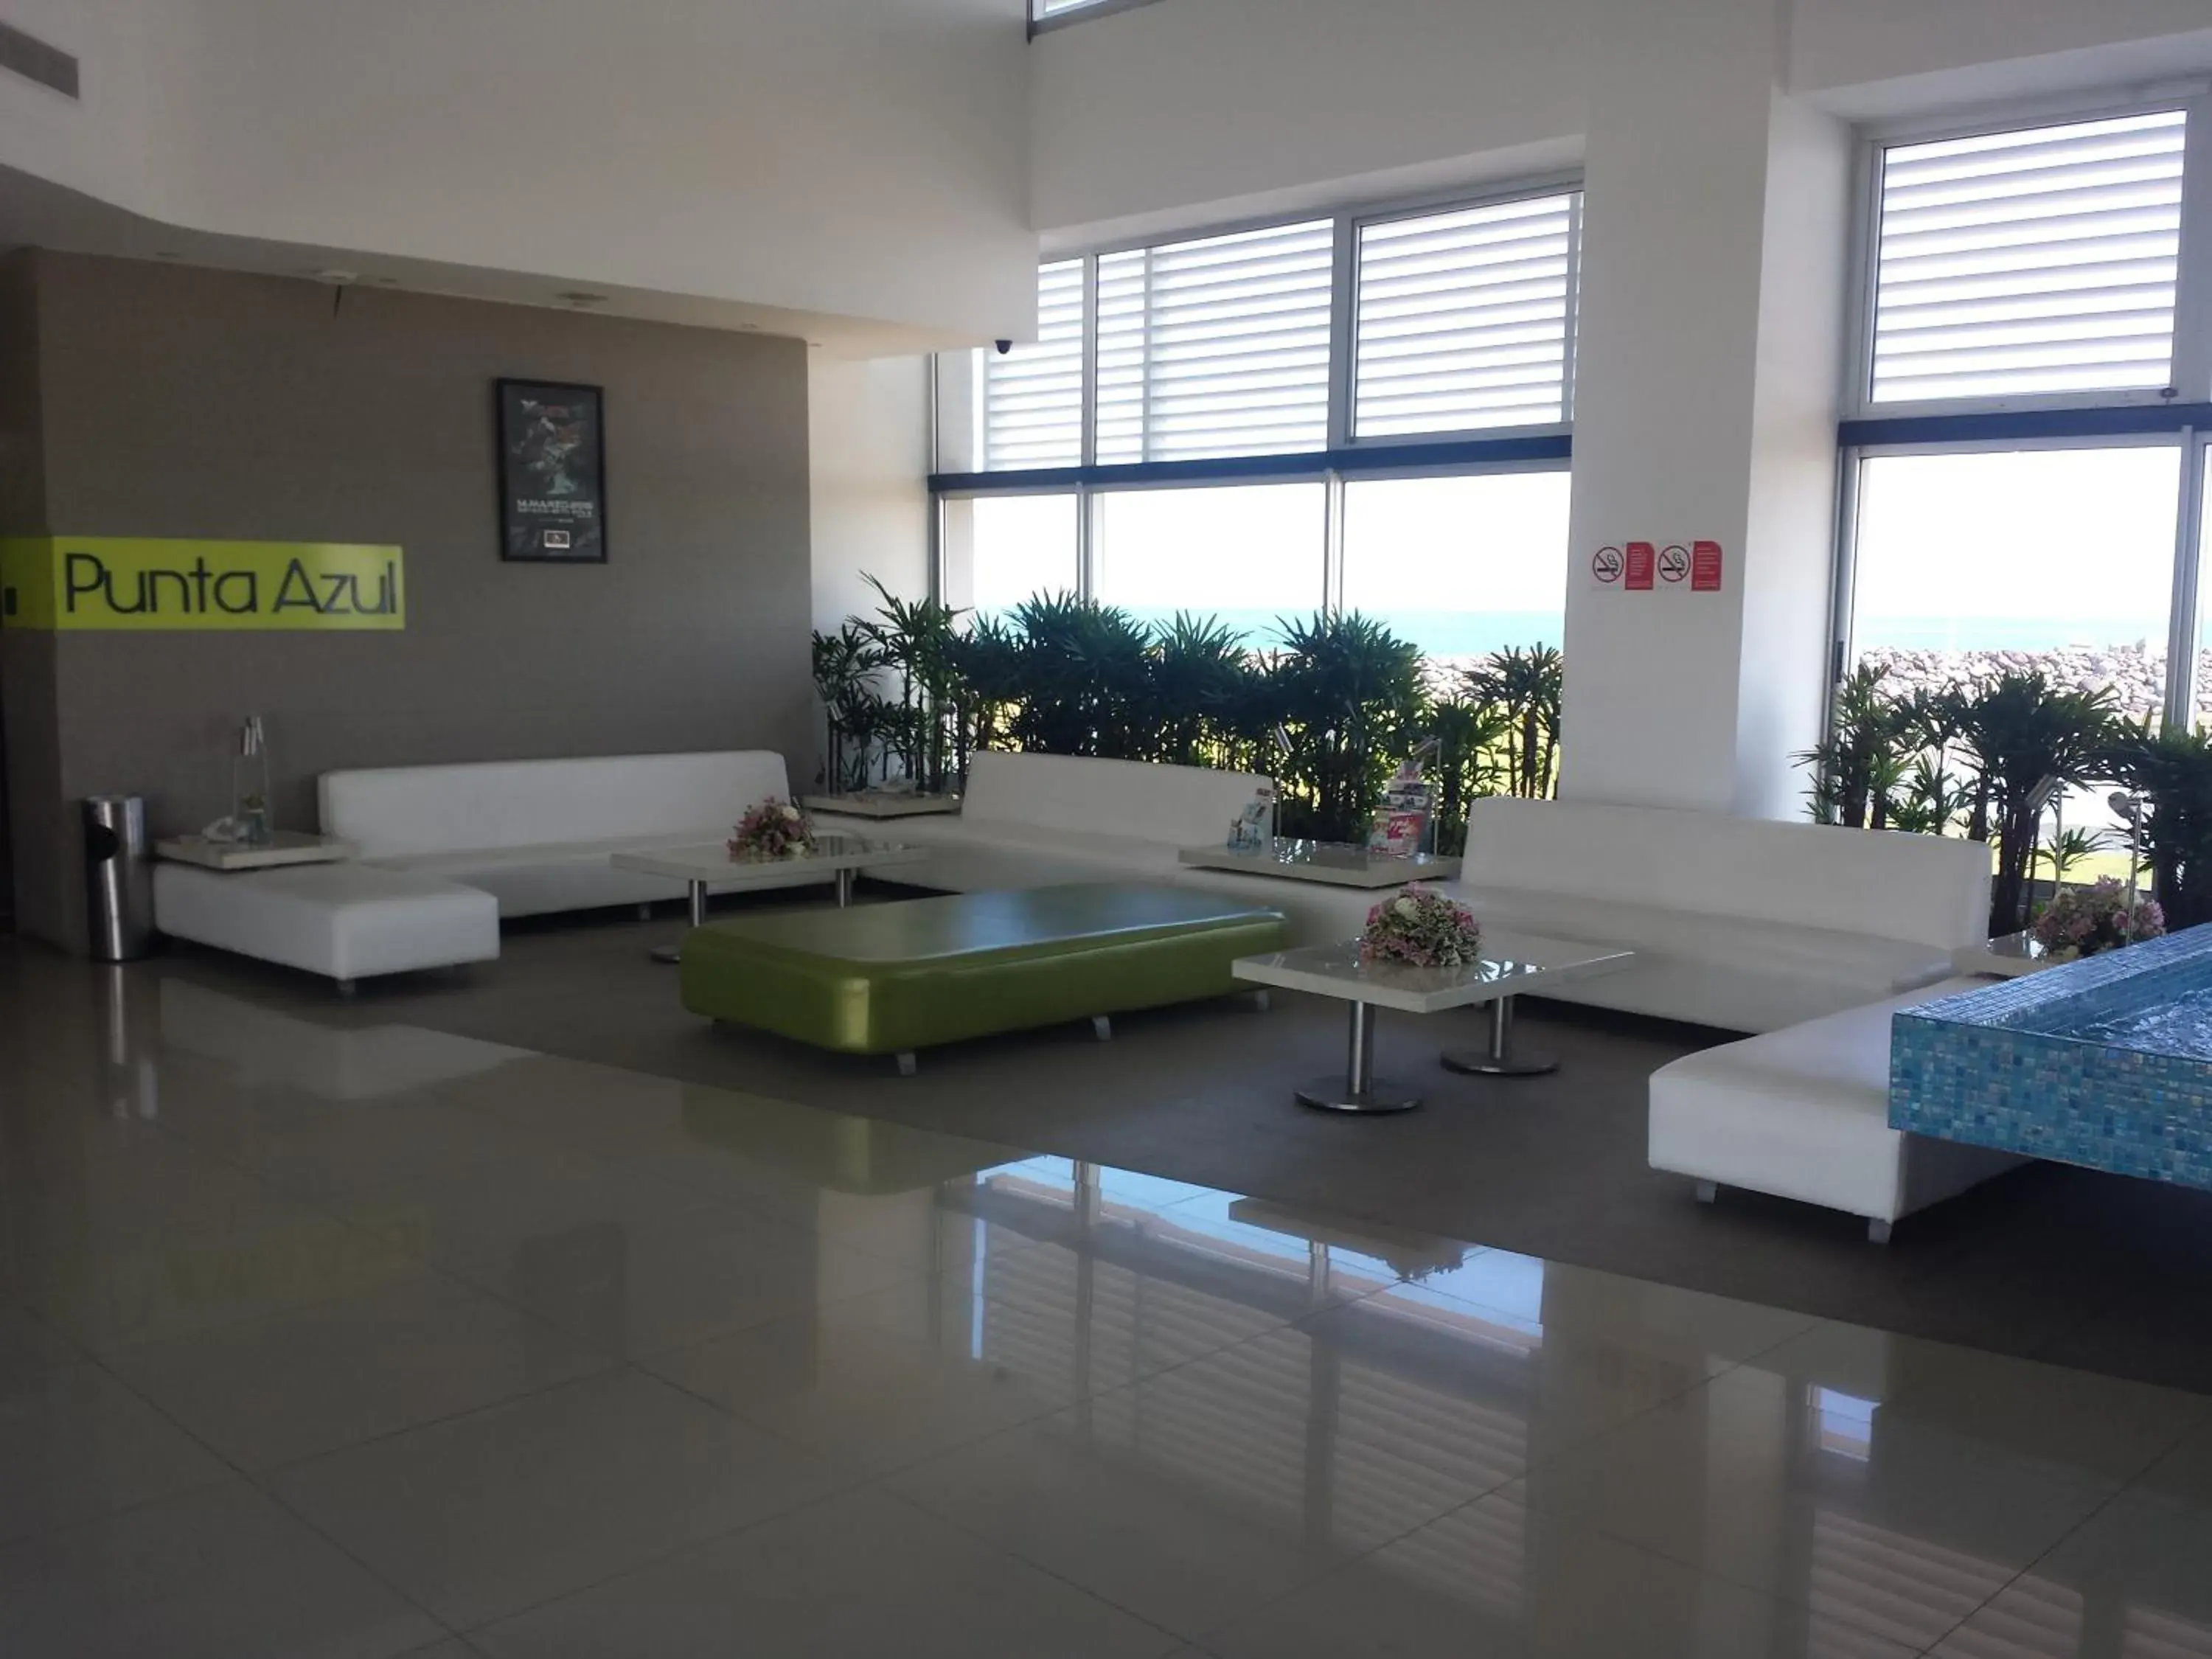 Lobby or reception, Lobby/Reception in Hotel Punta Azul